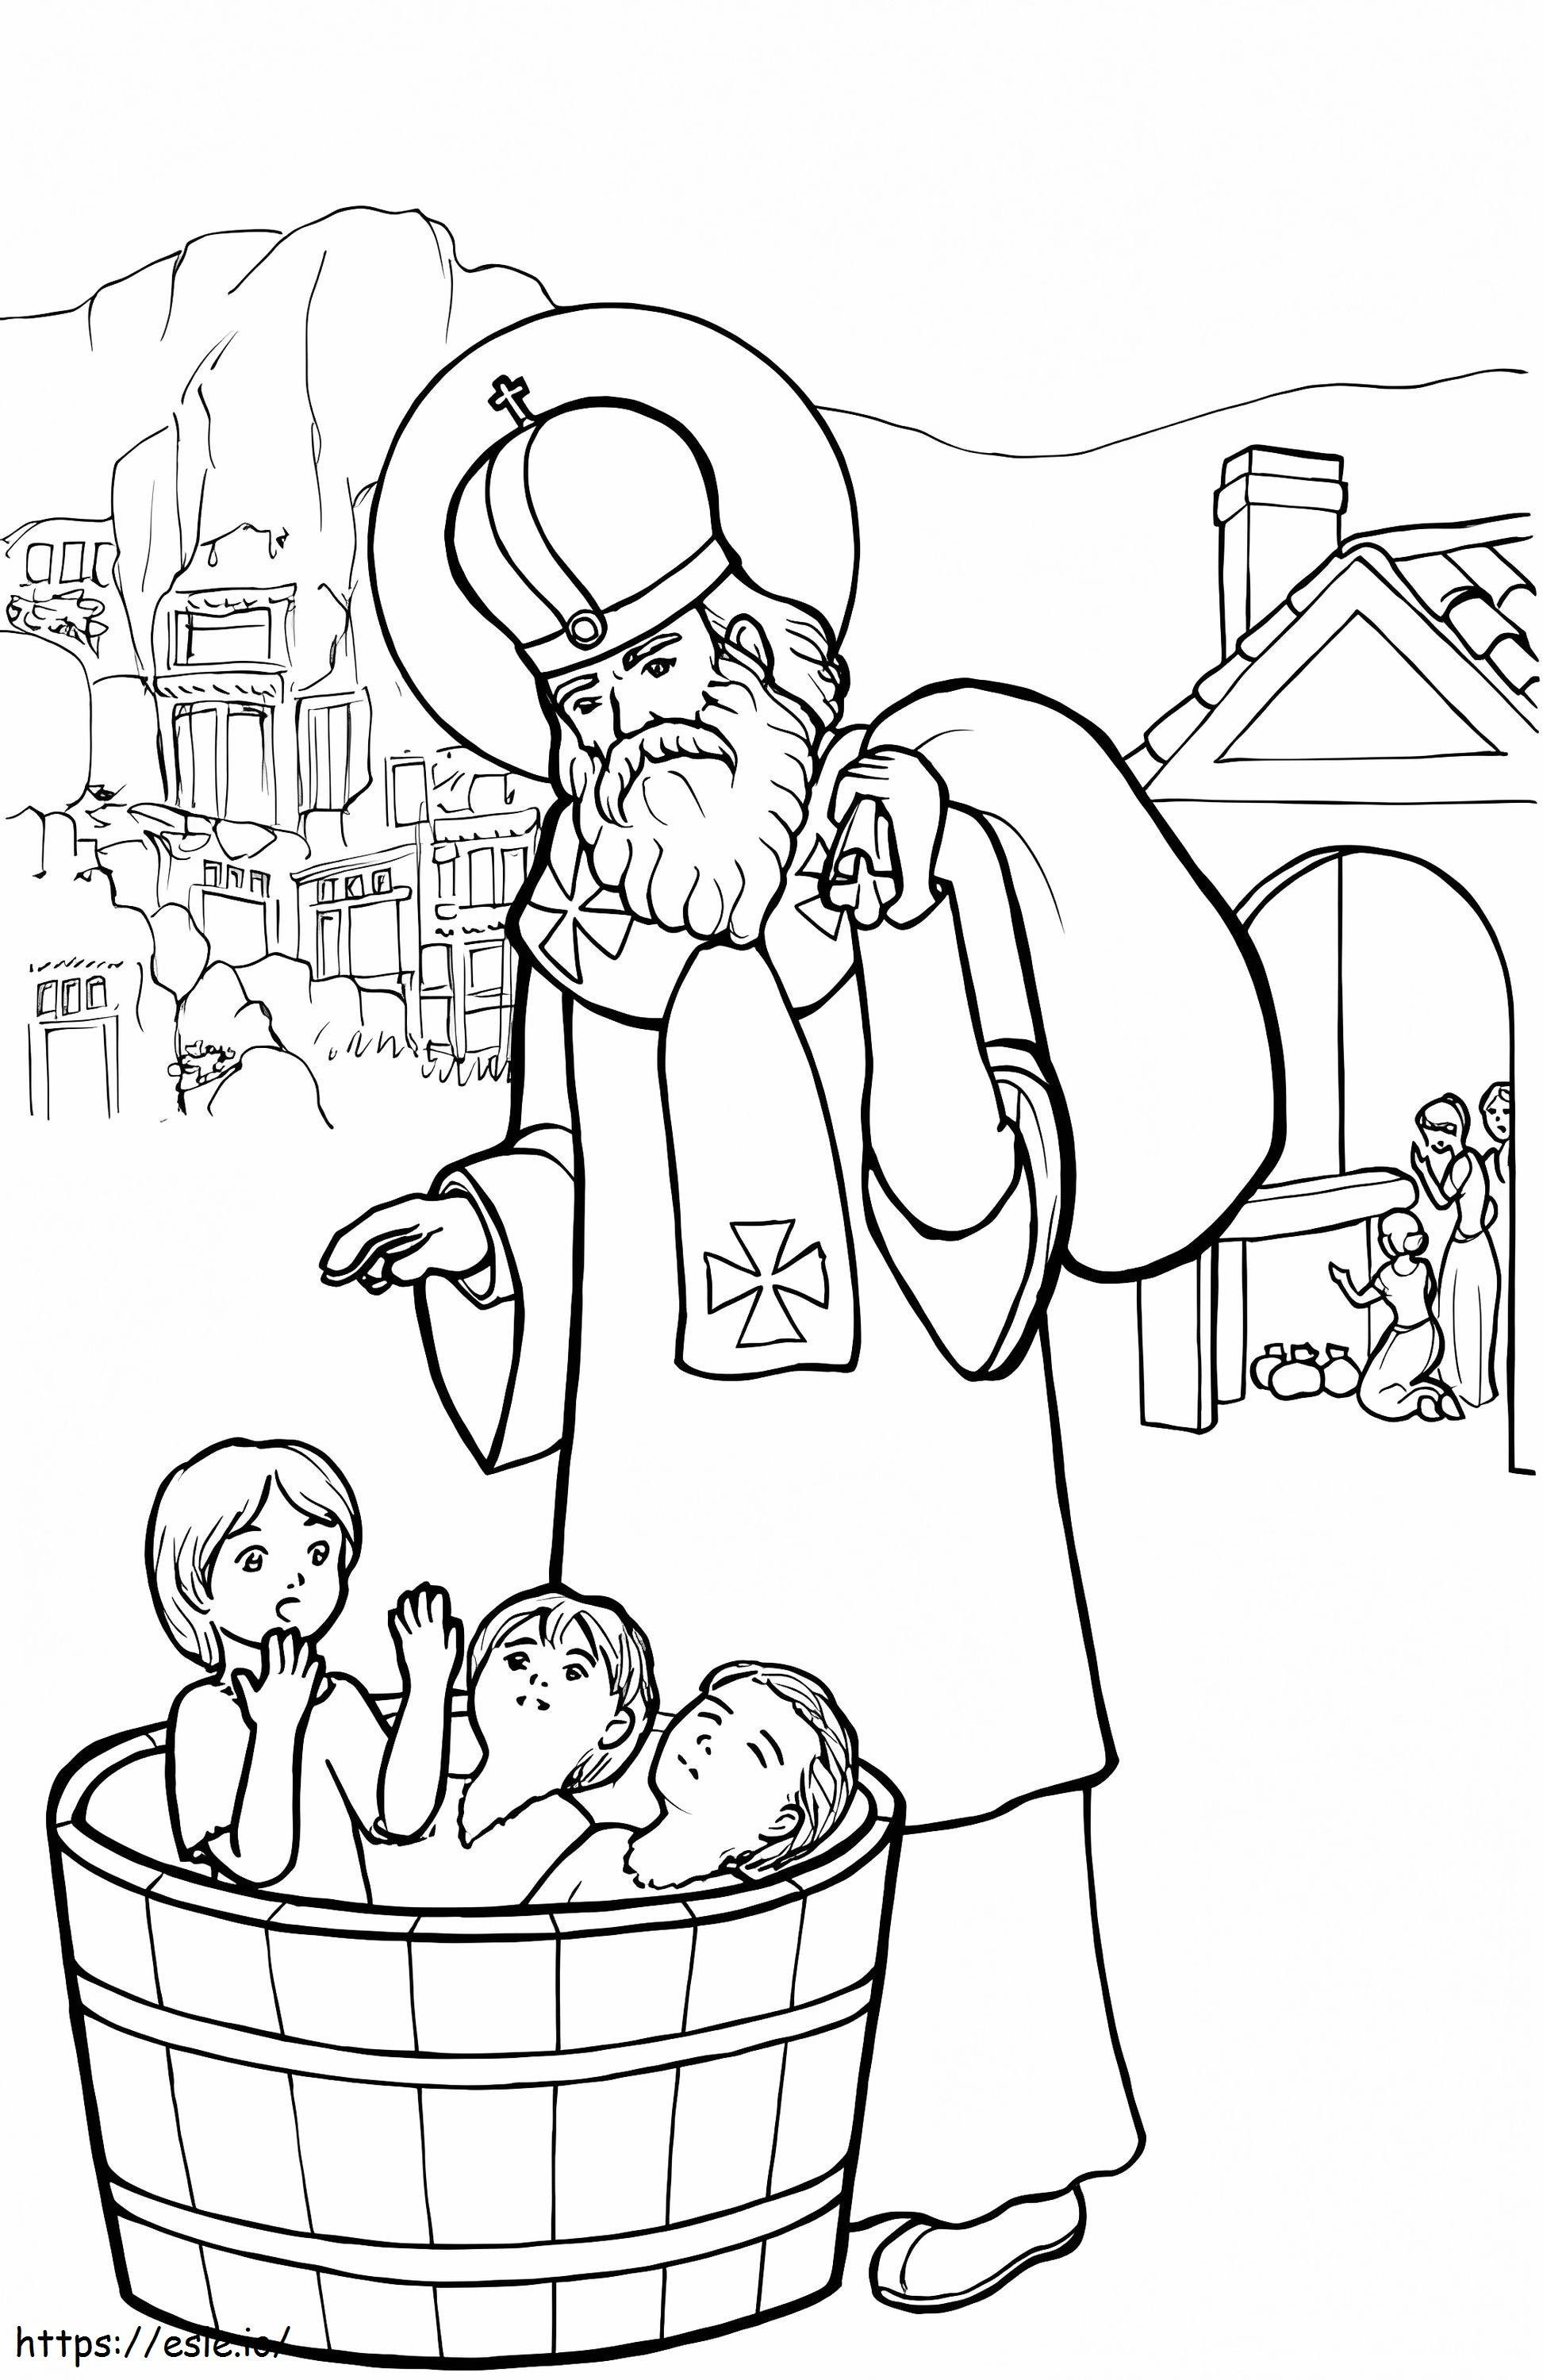 Saint Nicholas 3 coloring page